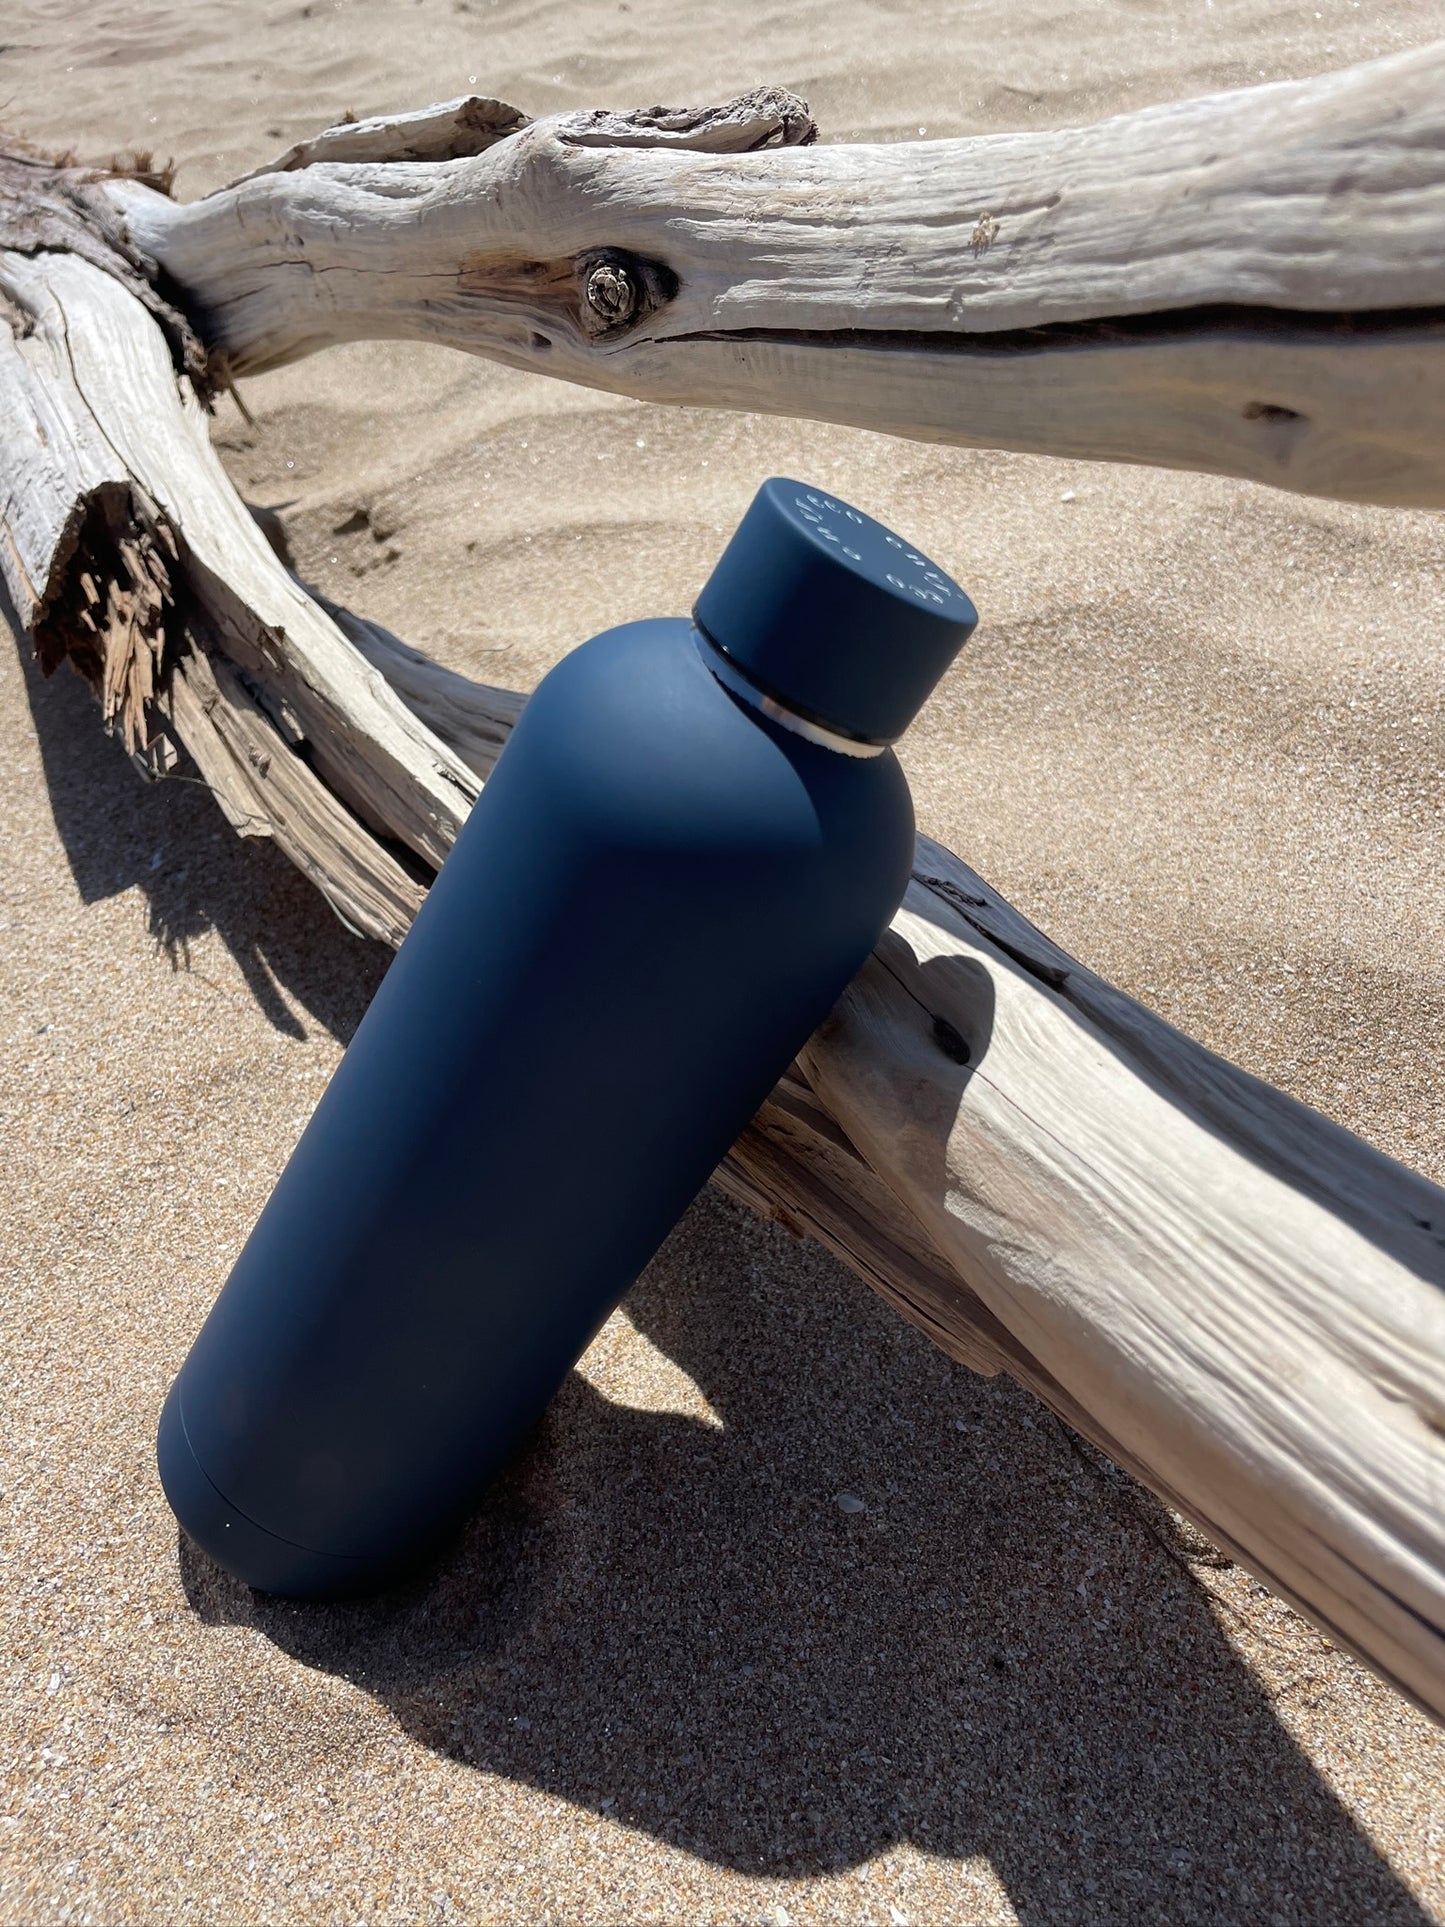 Navy Blue Water Bottle